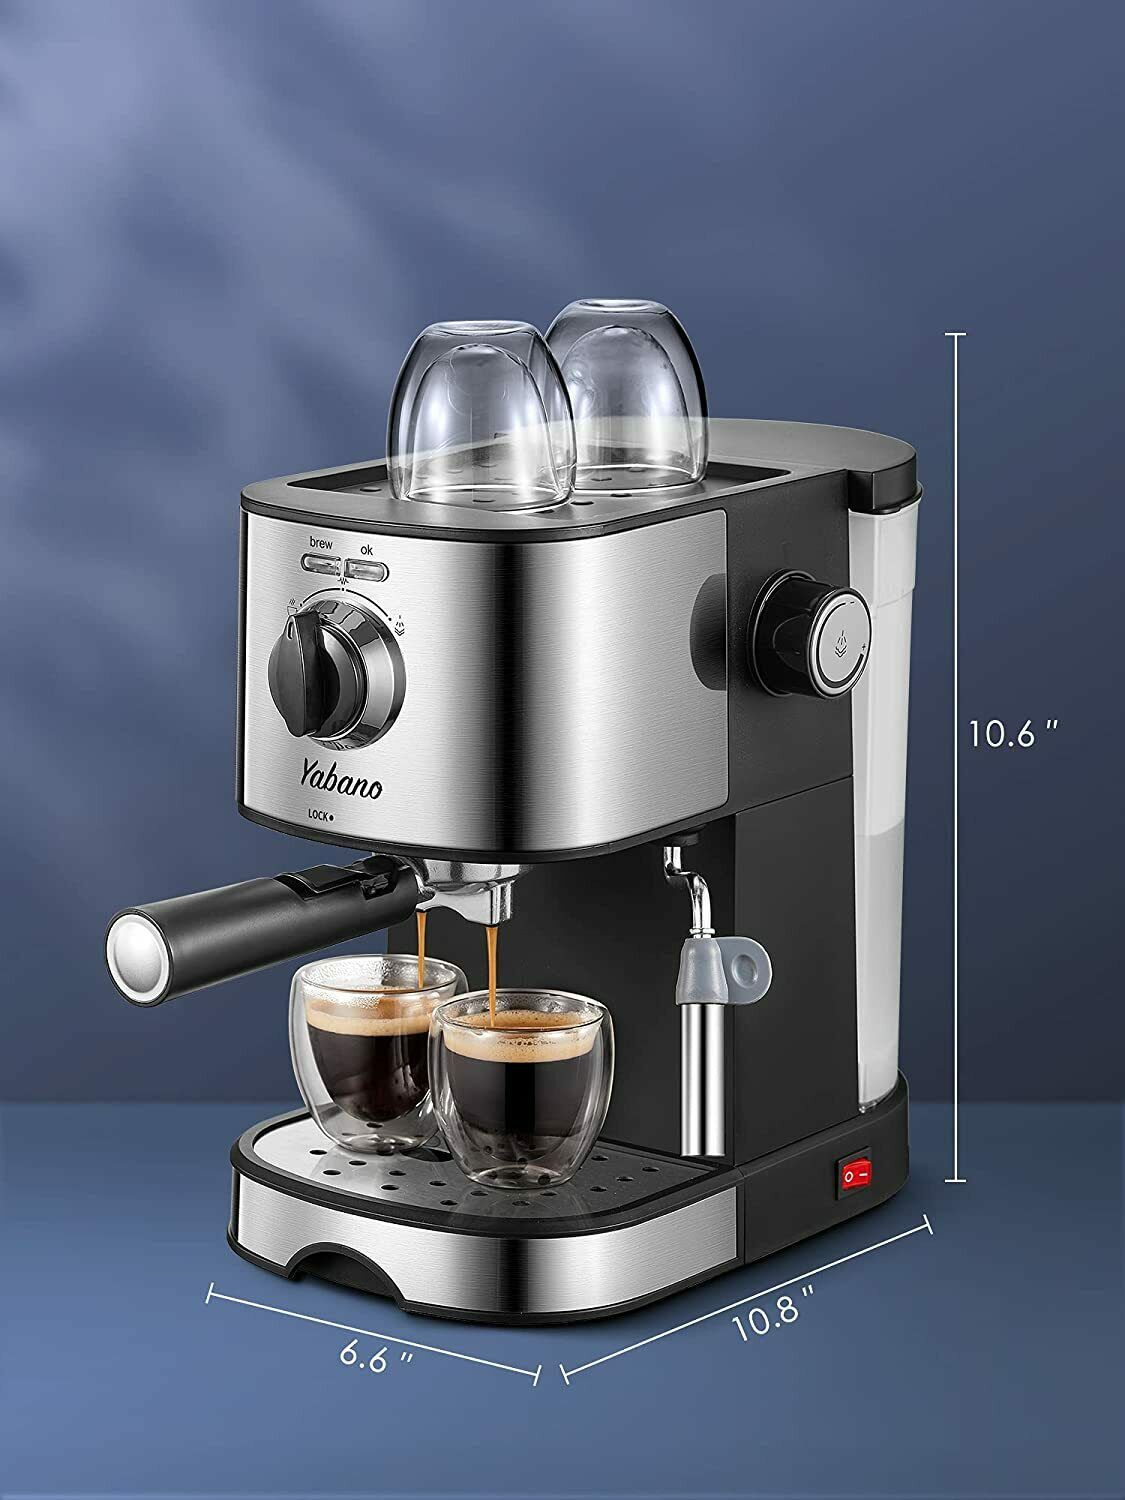 Best Buy: Mr. Coffee 4-Shot Steam Espresso Machine Black ECM20-23